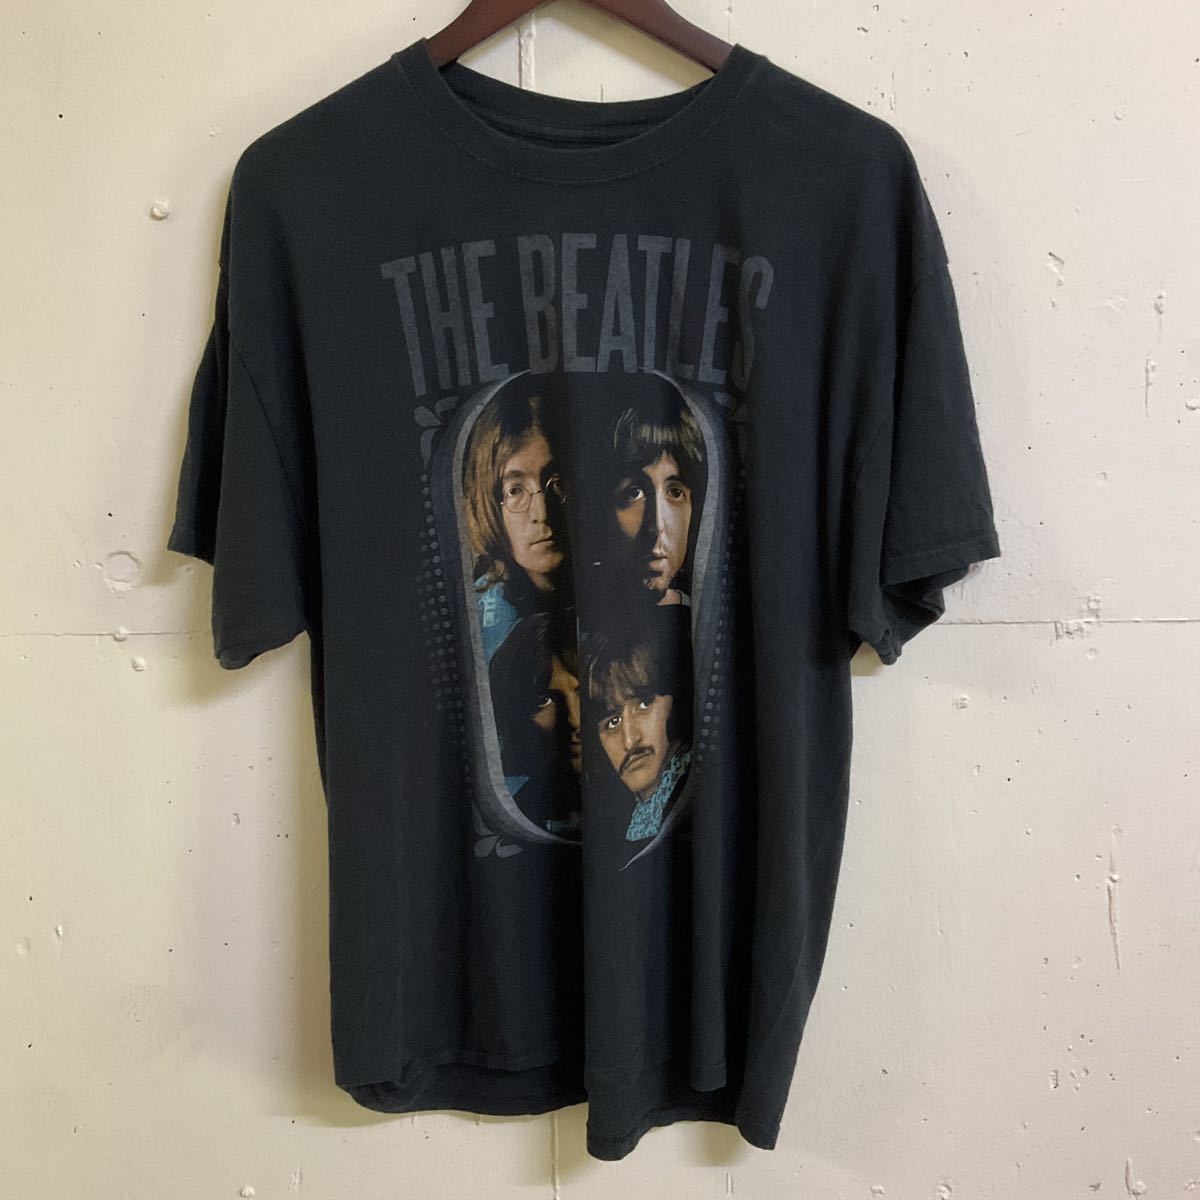 90s Vintage THE BEATLES オフィシャル バンT バンド Tシャツ Tee 